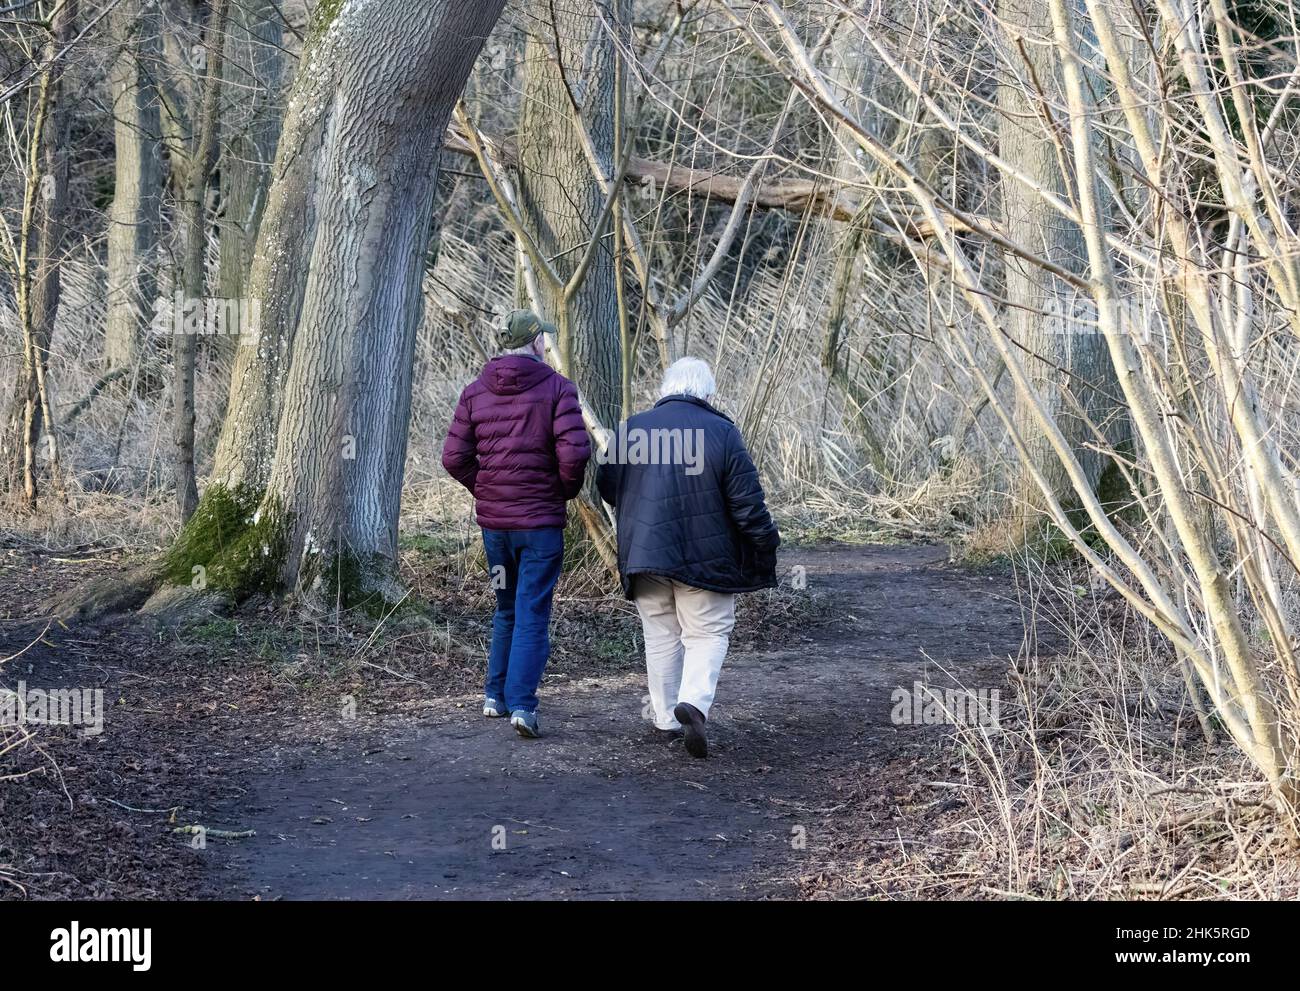 Retraite Royaume-Uni, un couple senior vu de l'arrière, marchant sur un chemin dans les bois en hiver, Suffolk Angleterre Royaume-Uni Banque D'Images